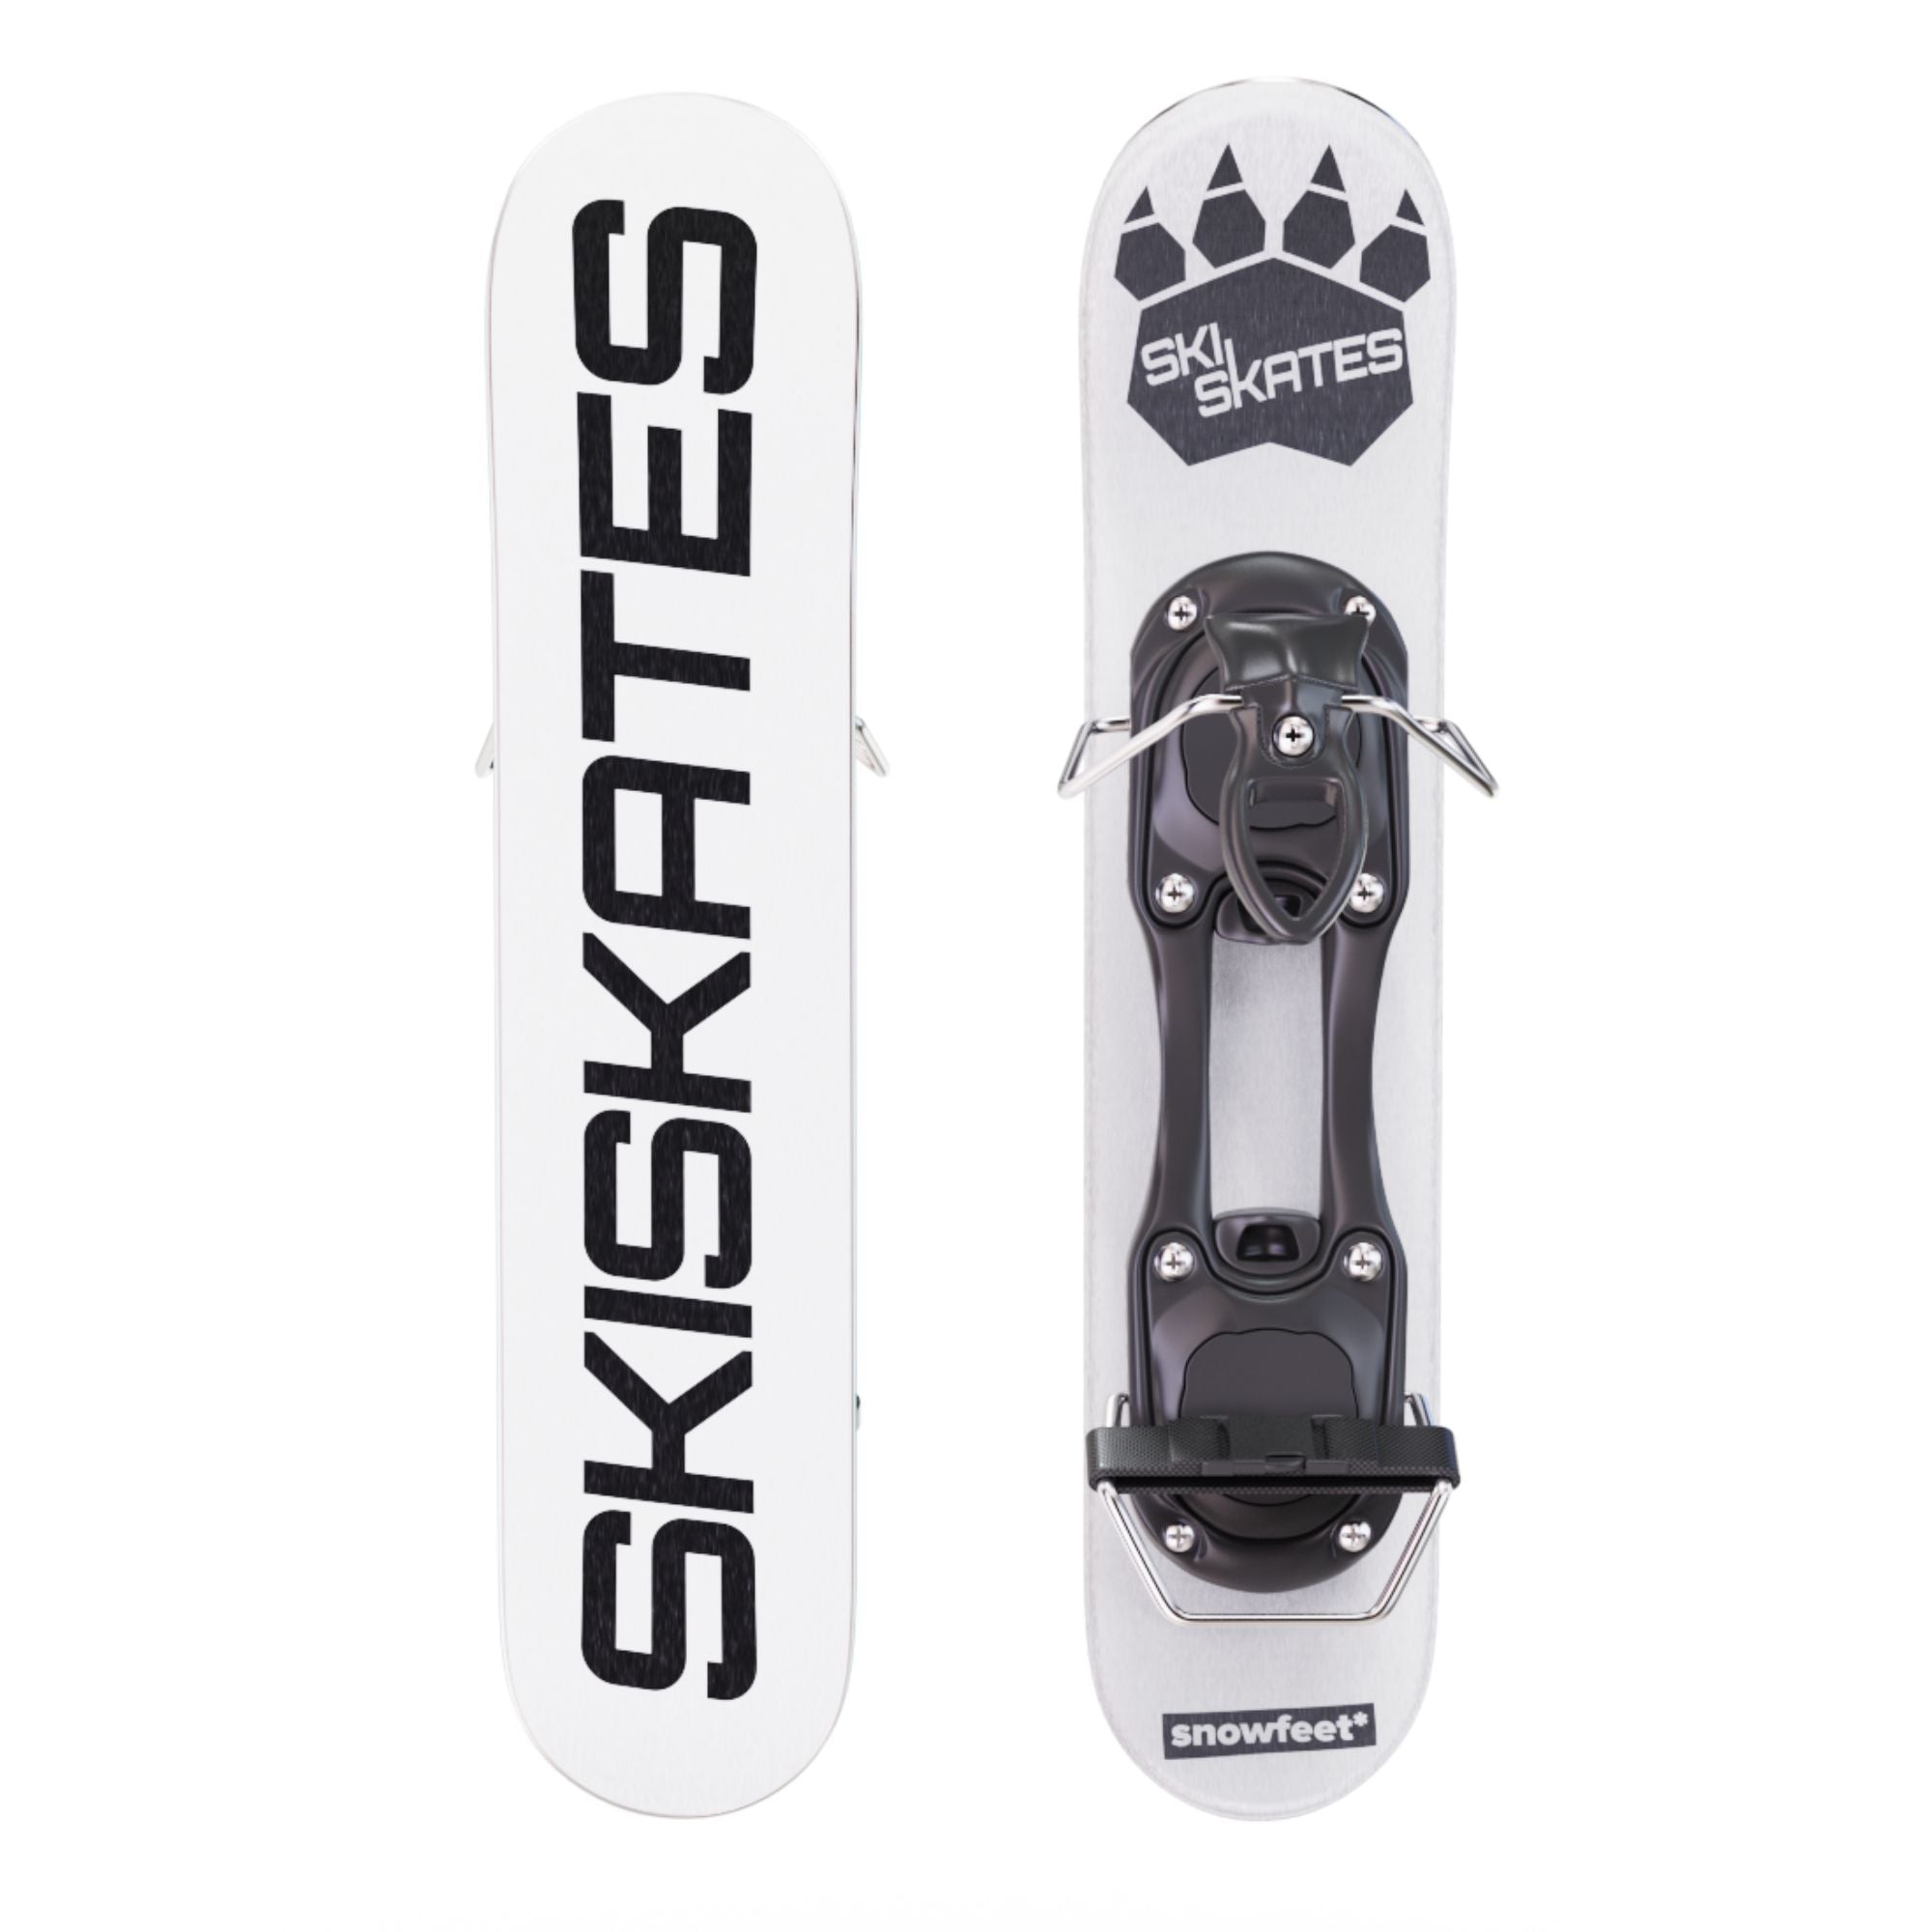 SKISKATES スキースケート スノーボードブーツ用写真に写っている物が全てです